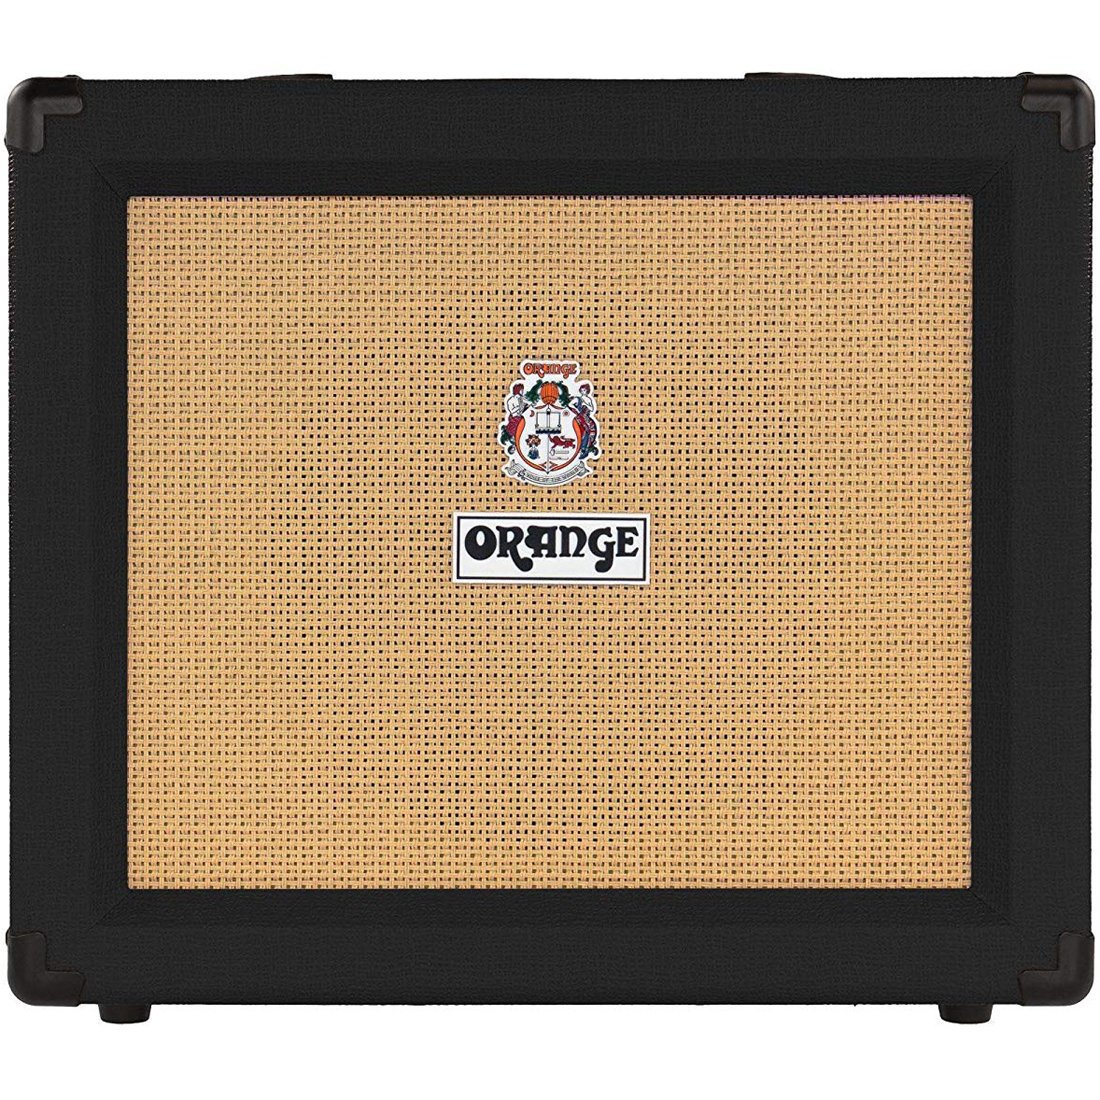 Orange CRUSH 35RT-BK Black Combo Guitar Amp with 10" Speaker-35 Watts-Music World Academy